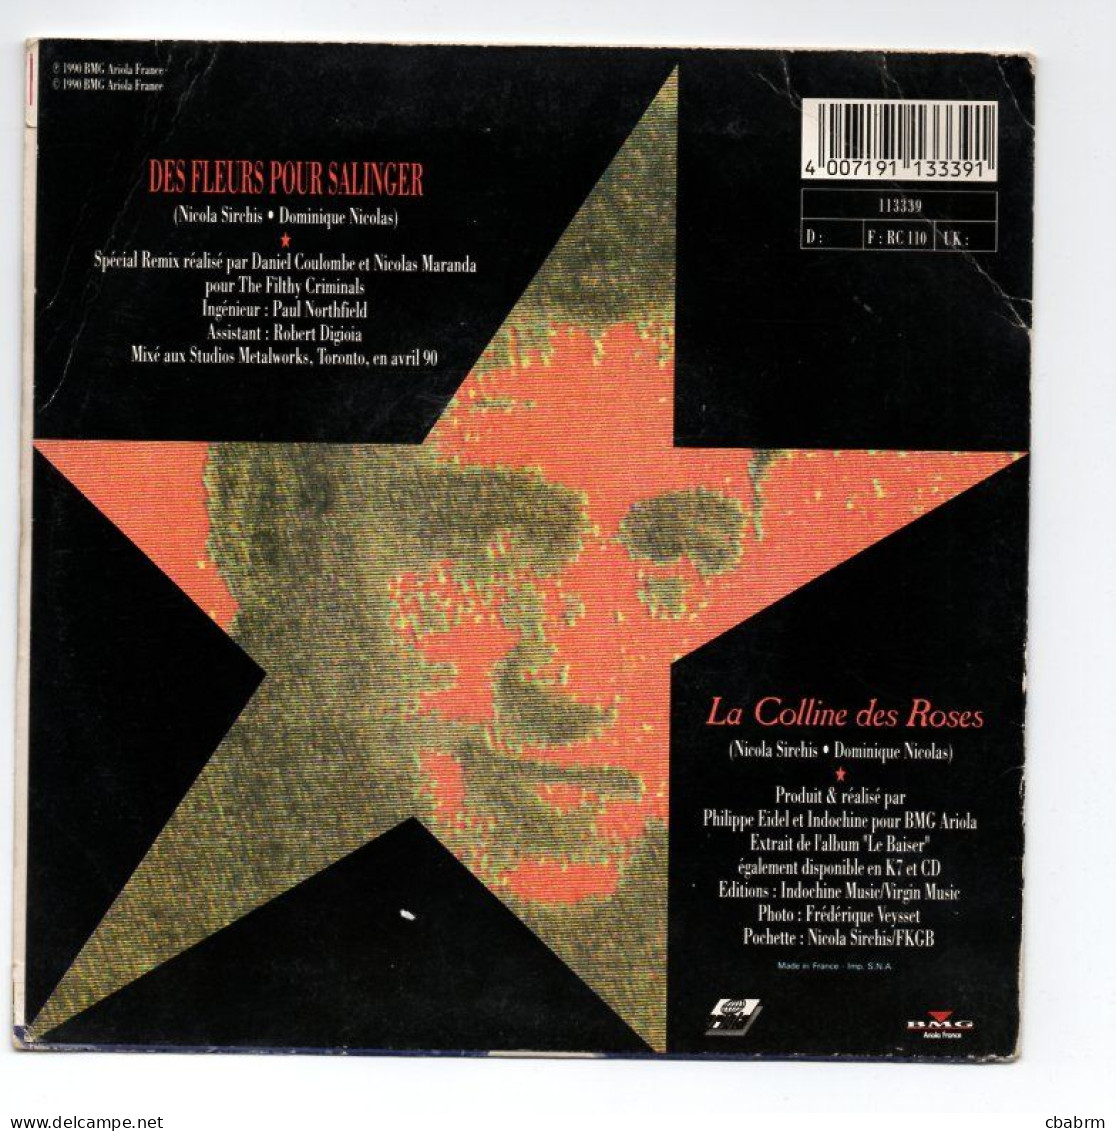 SP 45 TOURS INDOCHINE DES FLEURS POUR SALINGER 1990 FRANCE BMG 113339 - 7" - Autres - Musique Française